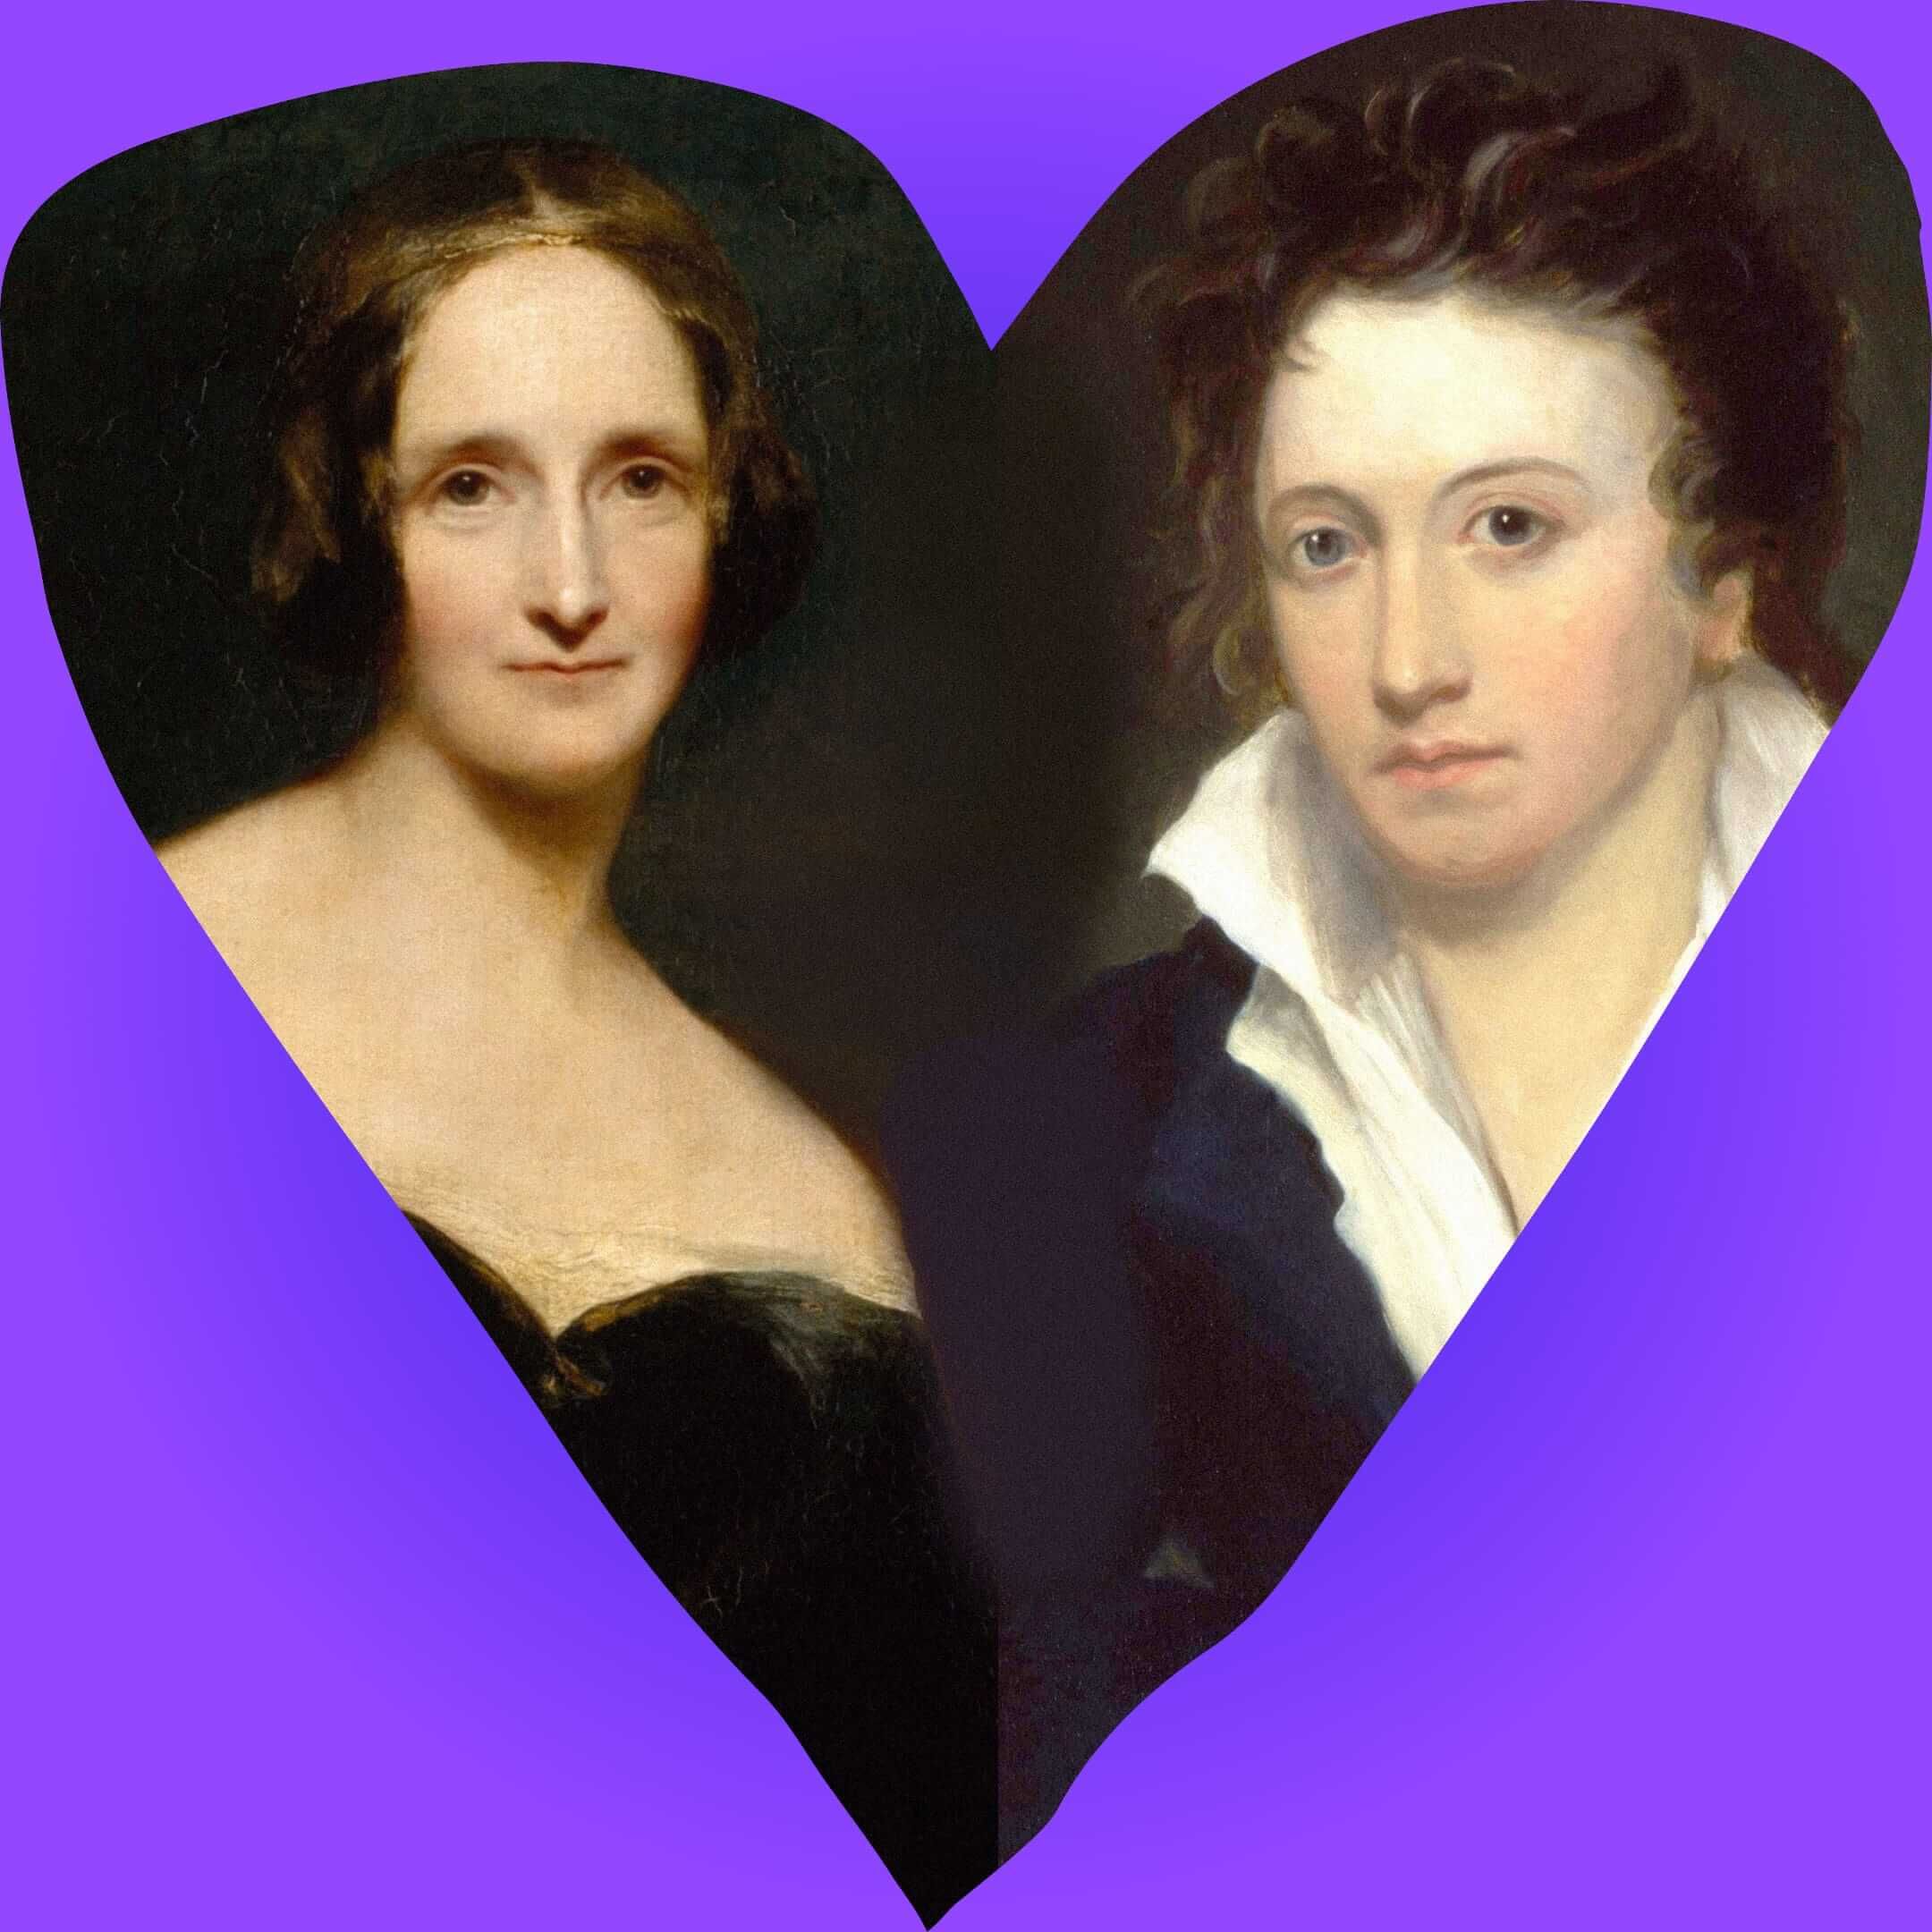 Коллаж из портретов Мэри Шелли (художник Ричард Ротвелл, 1840 год) и Перси Шелли (художник Альфред Клинт, 1819 год). Иллюстрация: Букмейт